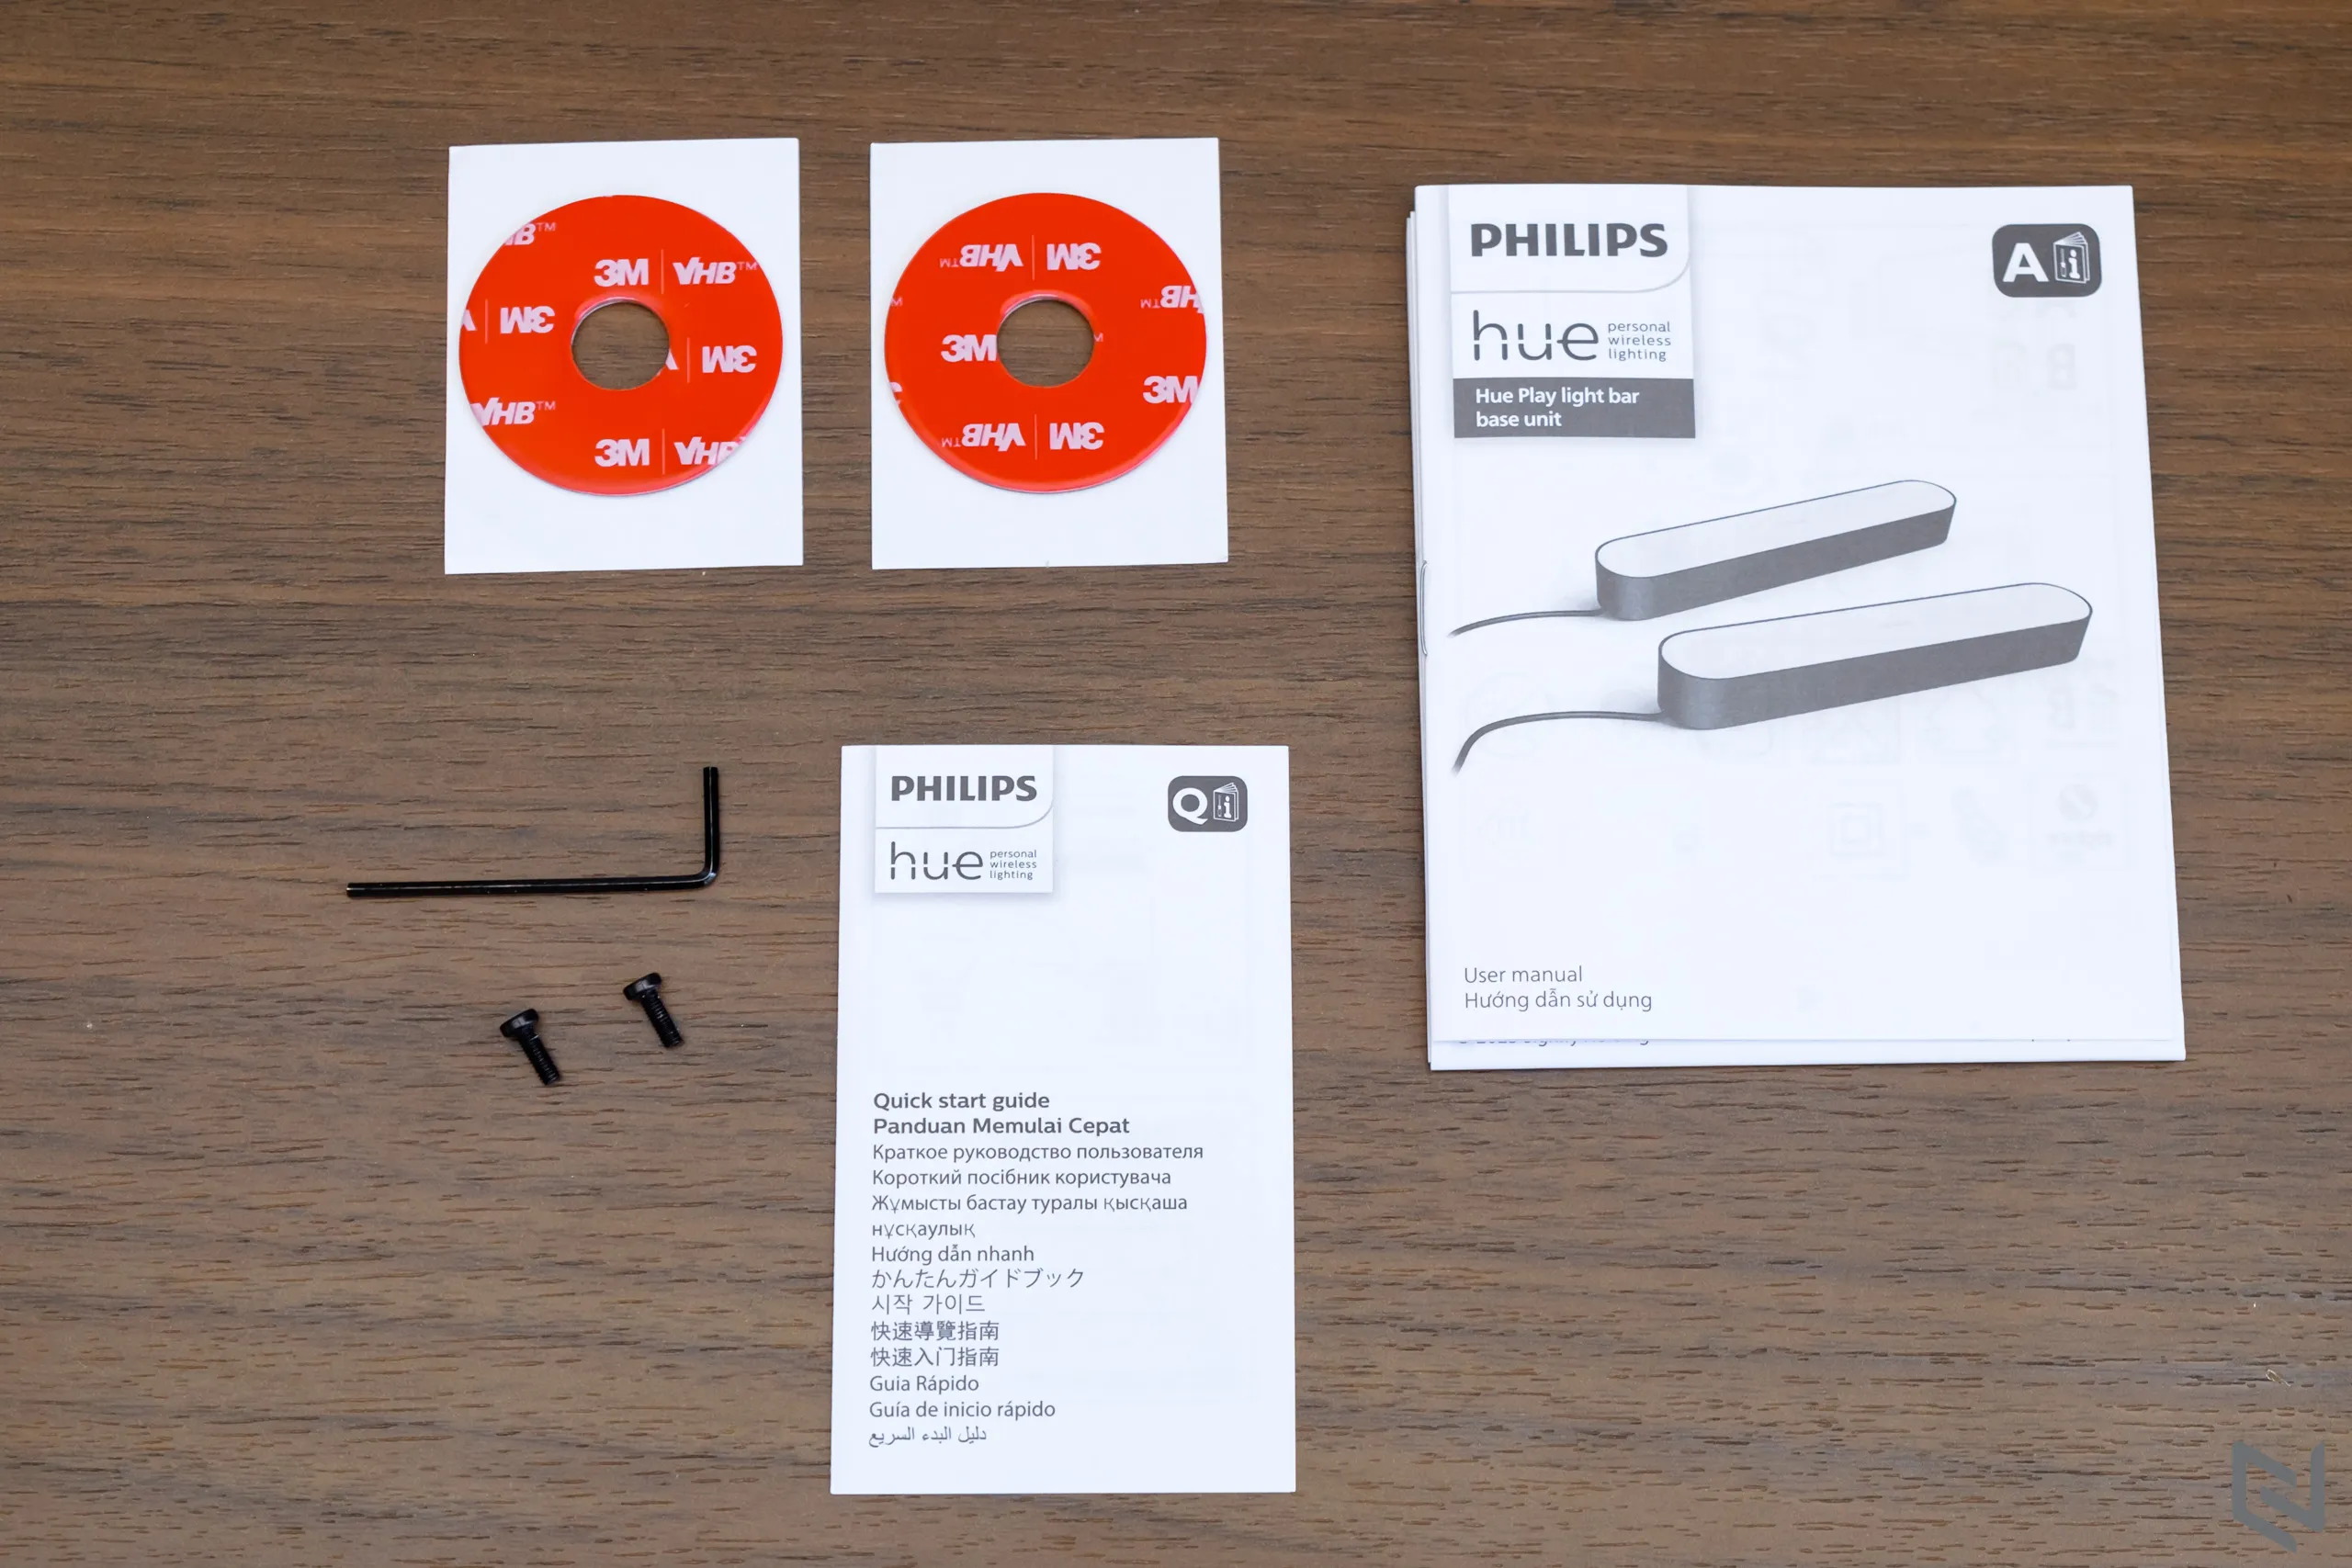 Trải nghiệm đèn thông minh Philips Hue Play Light Bar - Trang trí và tăng thêm cảm xúc cho góc thư giãn của bạn